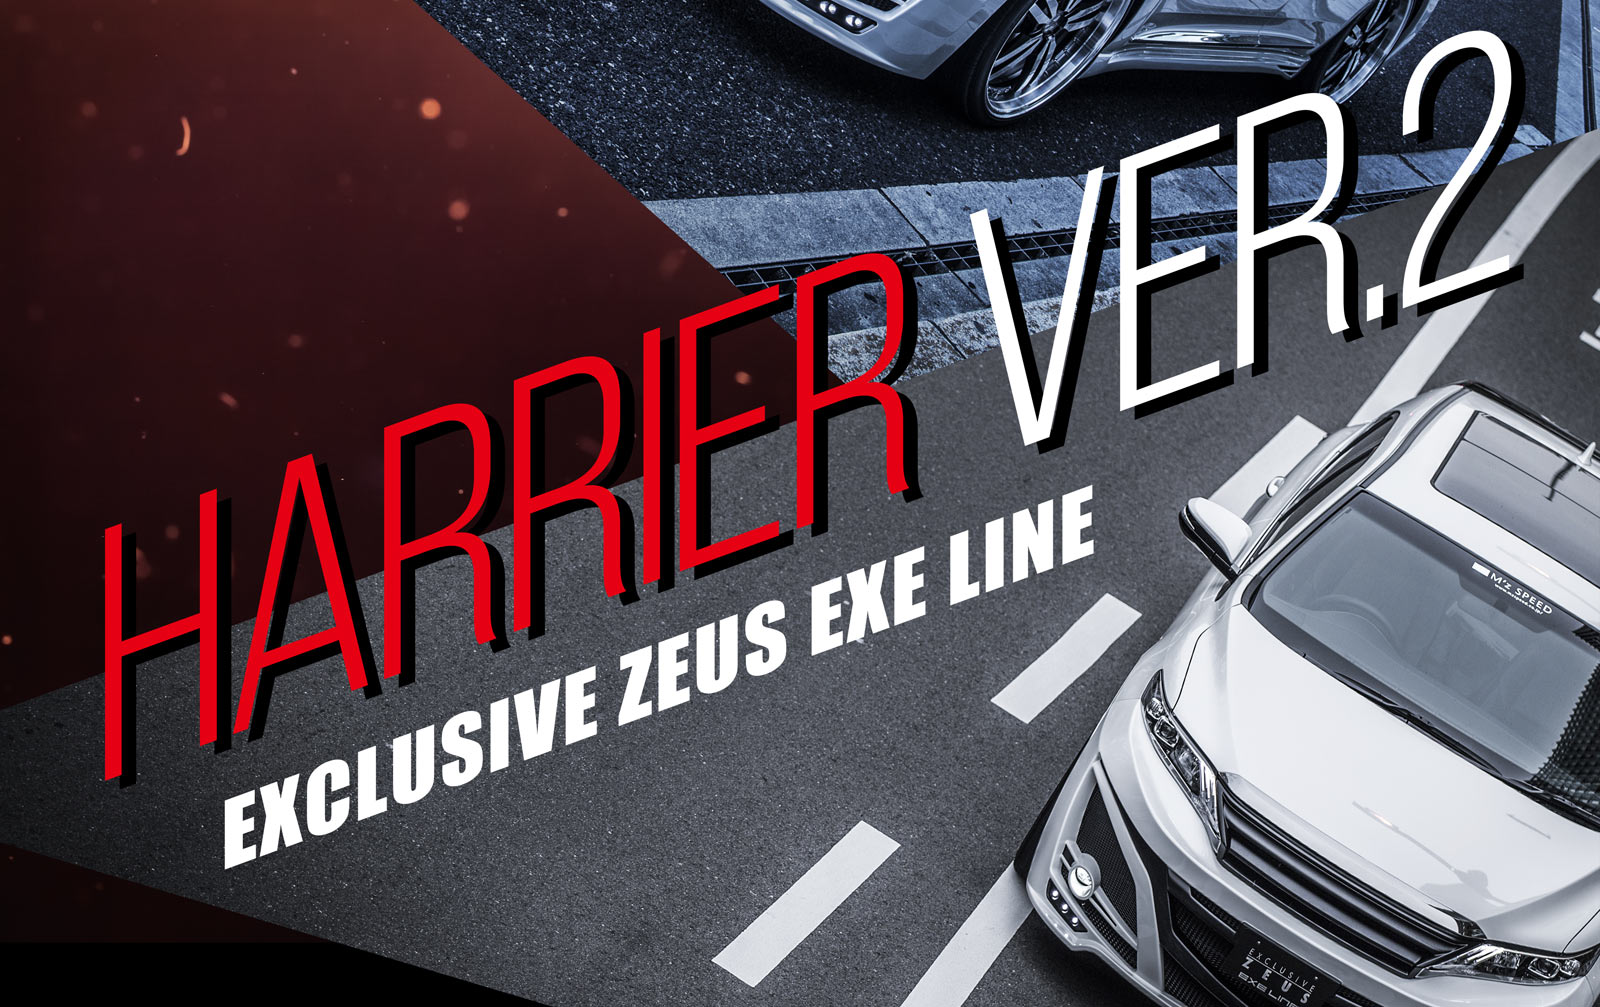 HARRIER Ver.2 EXCLUSIVE ZEUS EXE LINE